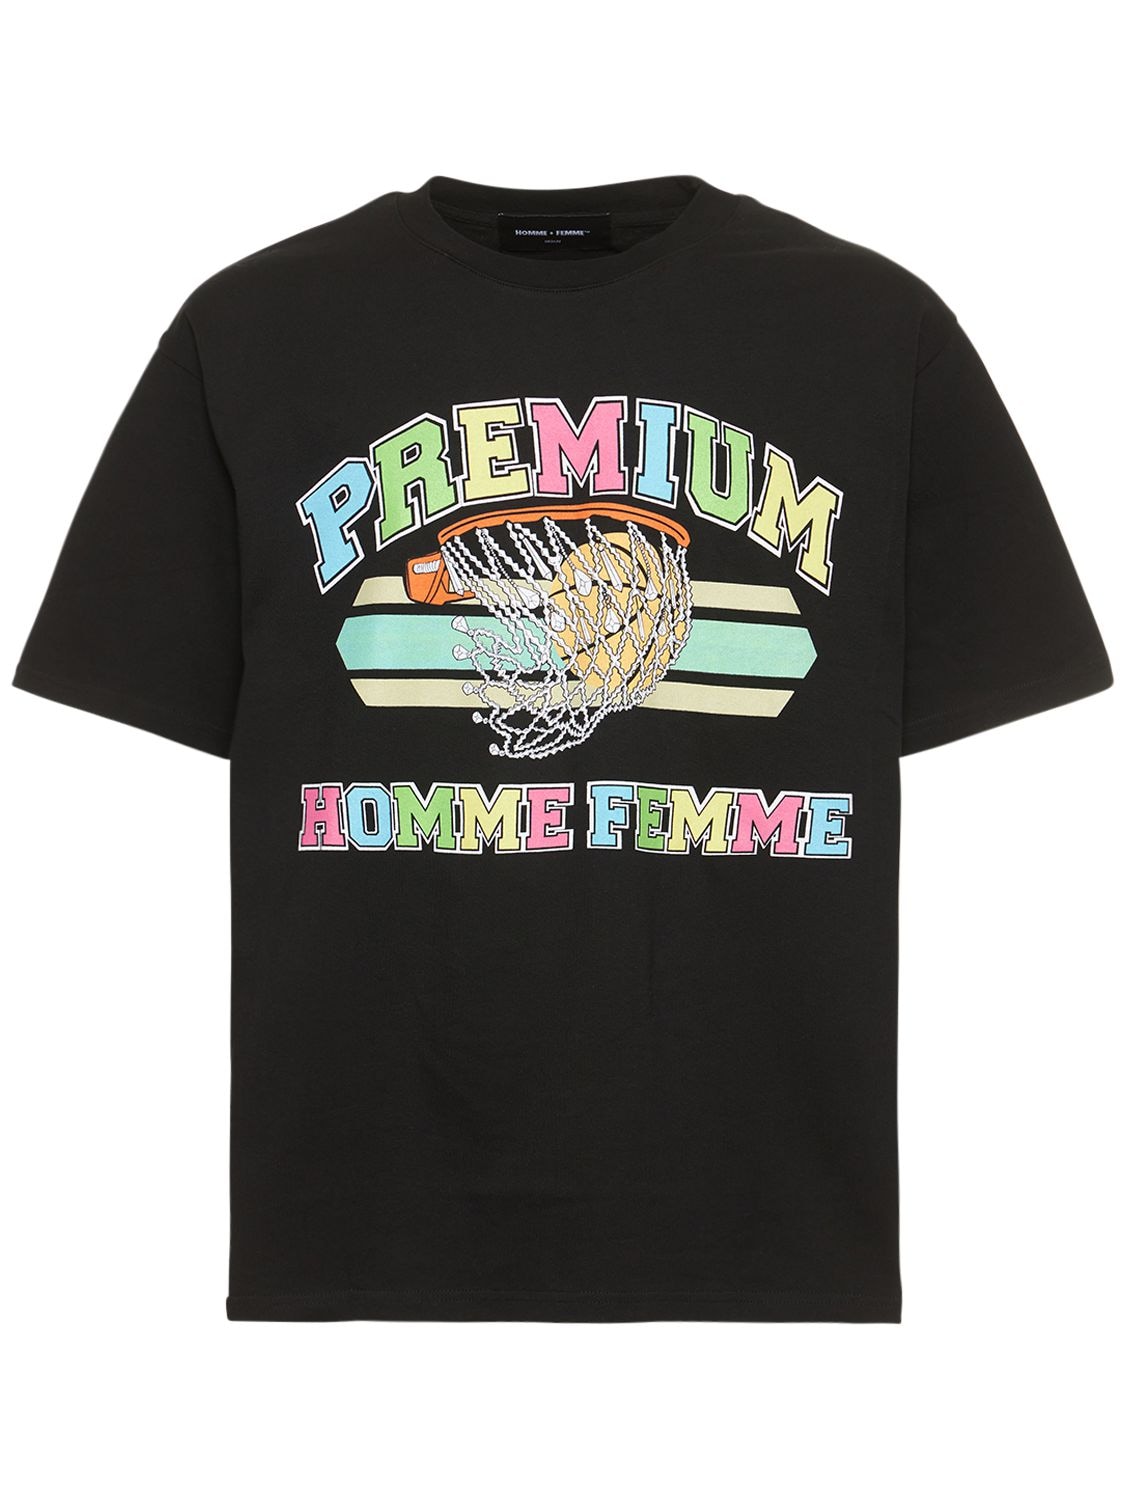 HOMME + FEMME LA Premium Basketball Cotton Jersey T-shirt